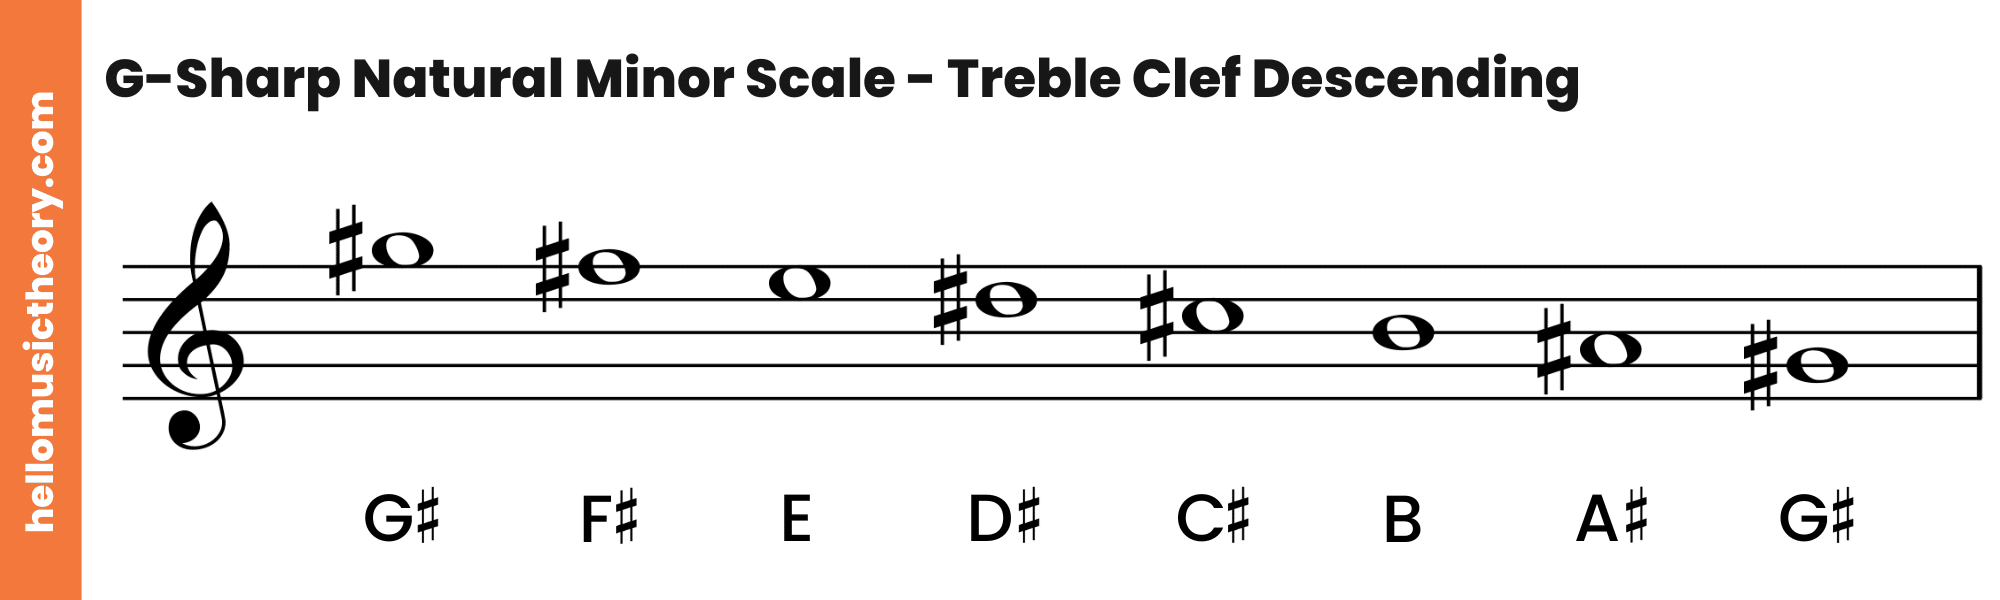 G-Sharp-Natural-Minor-Scale-Treble-Clef-Descending